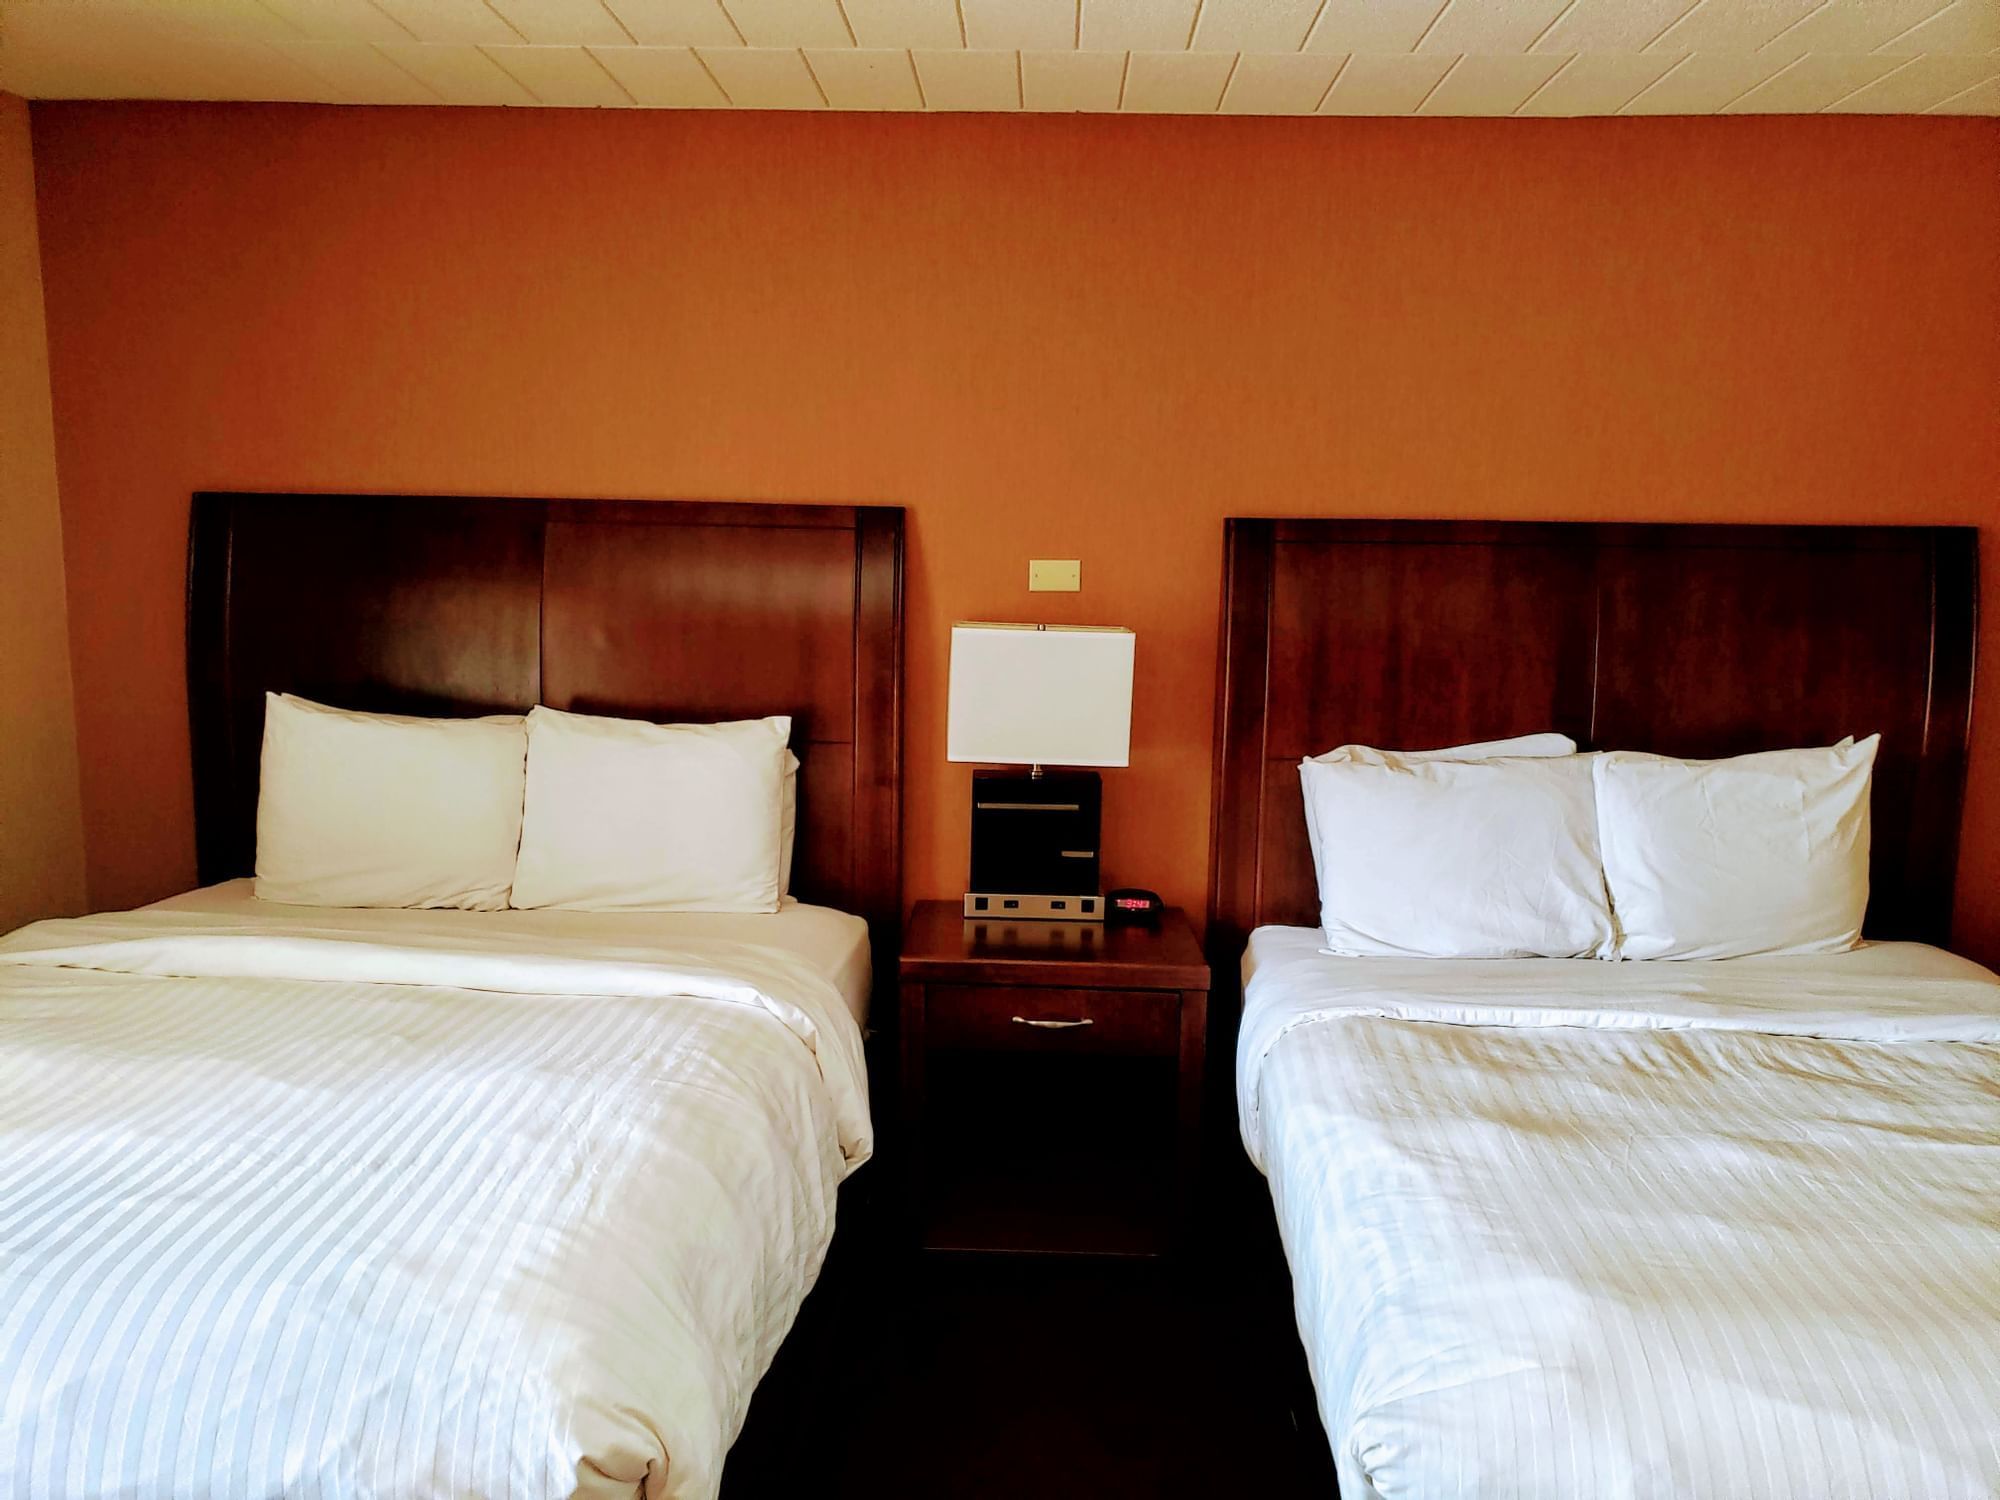 Bedroom Arrangement in Standard Room at Evergreen Resort